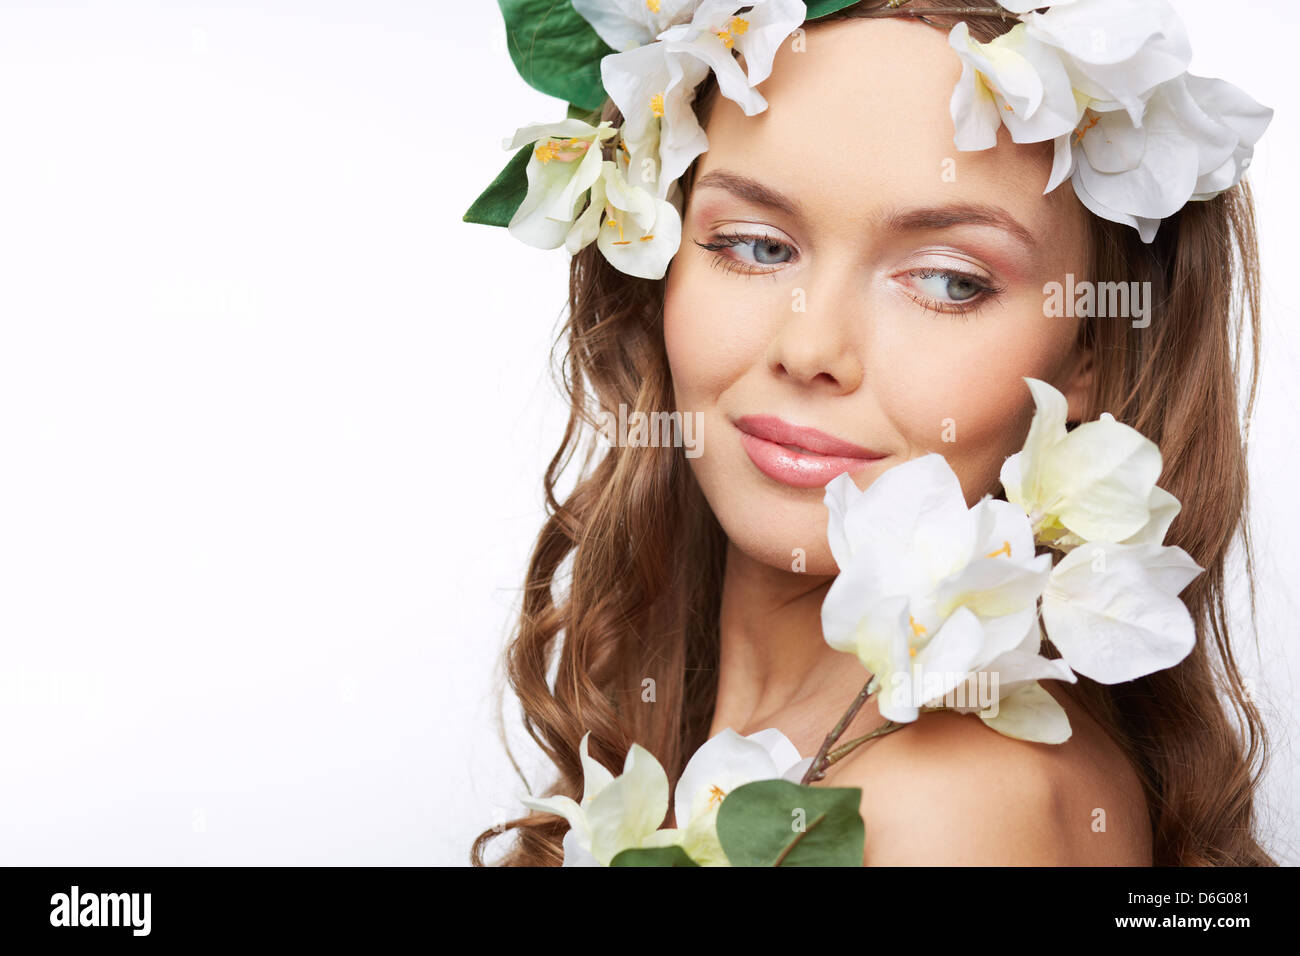 Bild von einem schönen Mädchen mit weißen Blumen geschmückt Stockfoto